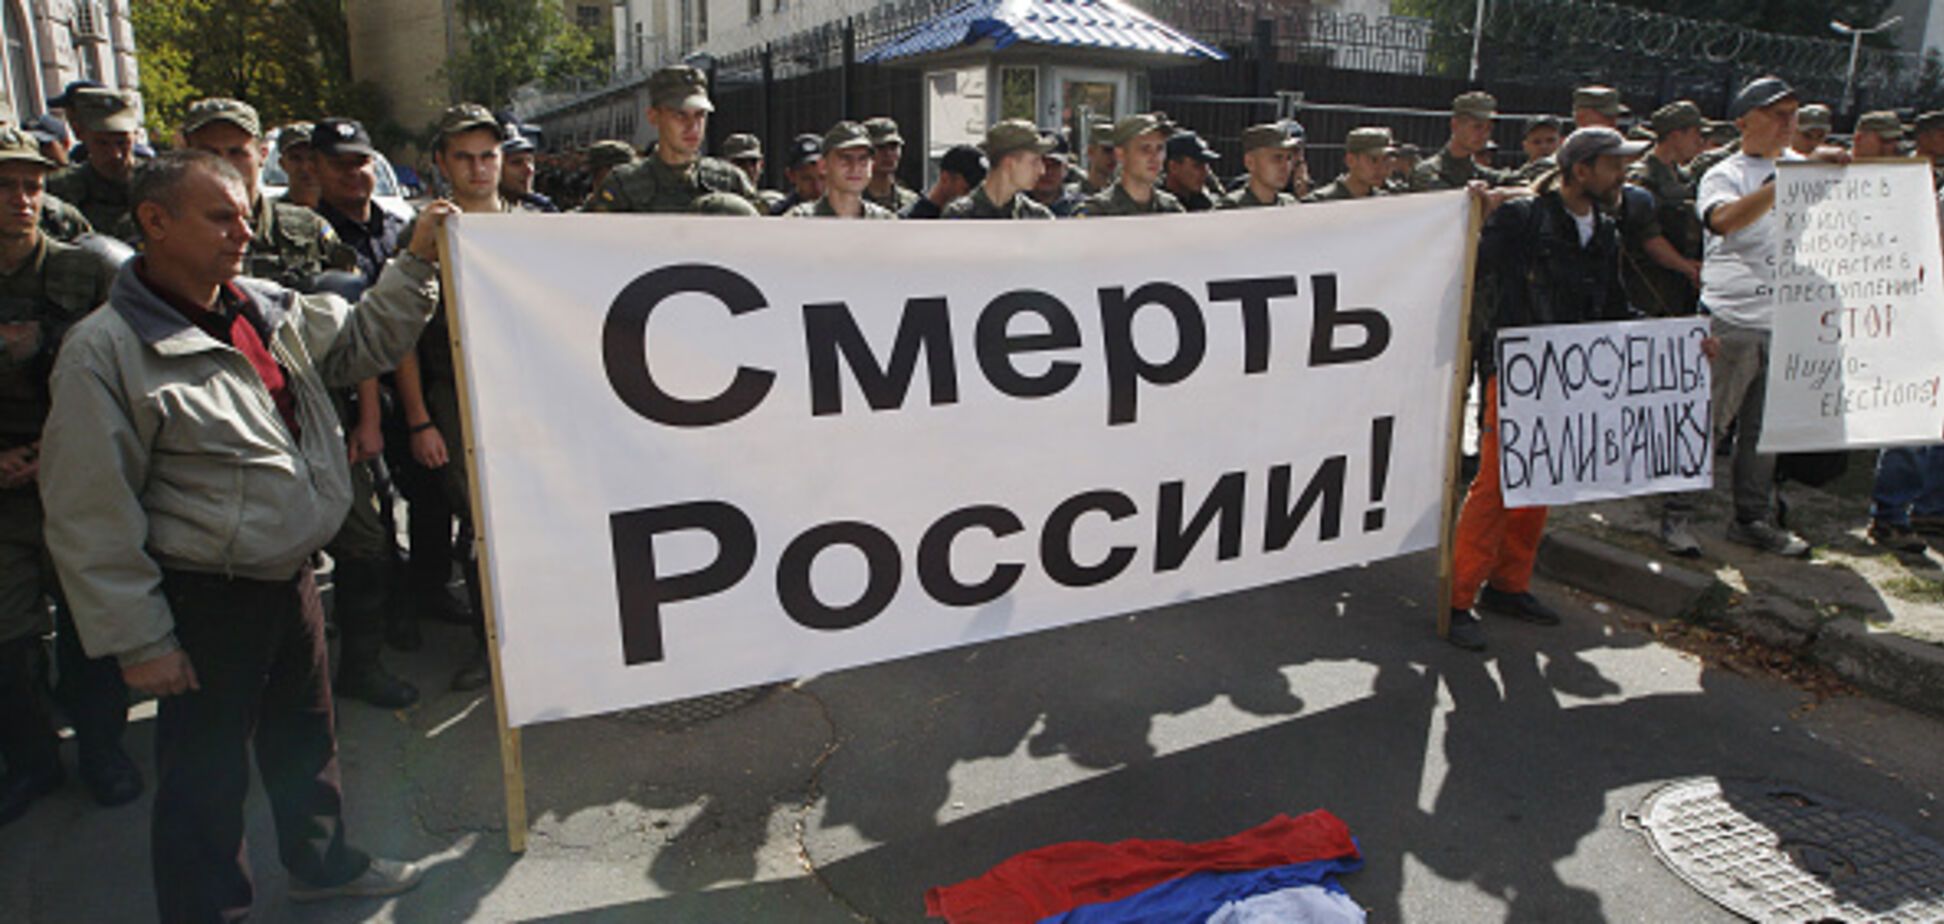 Смерть Росії: у Києві активісти закували в ланцюги центр пропагандистів. Відеофакт